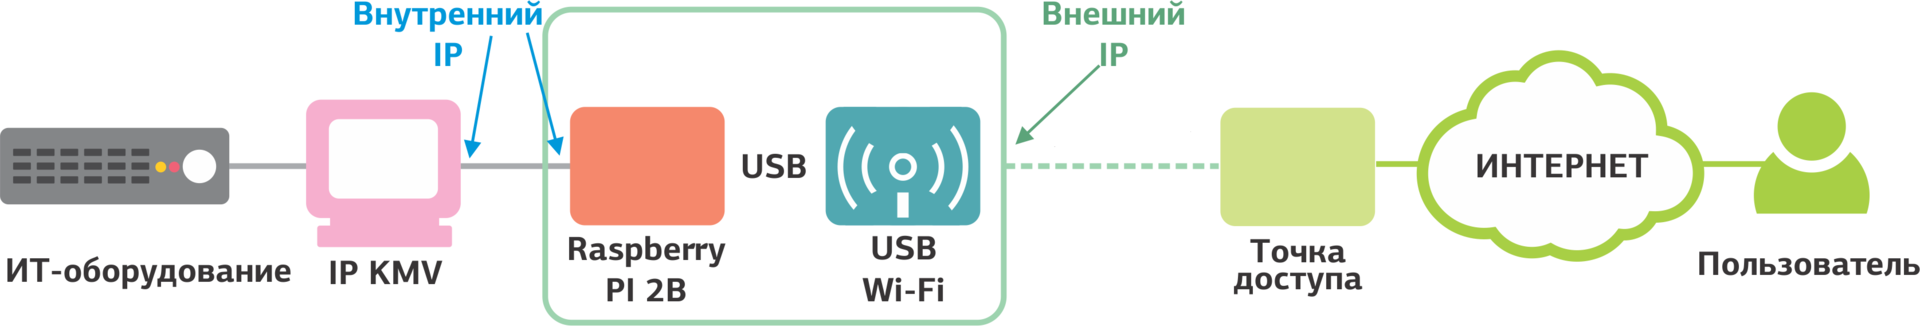 Полезные мелочи в дата-центре: Wi-Fi IP KVM - 8